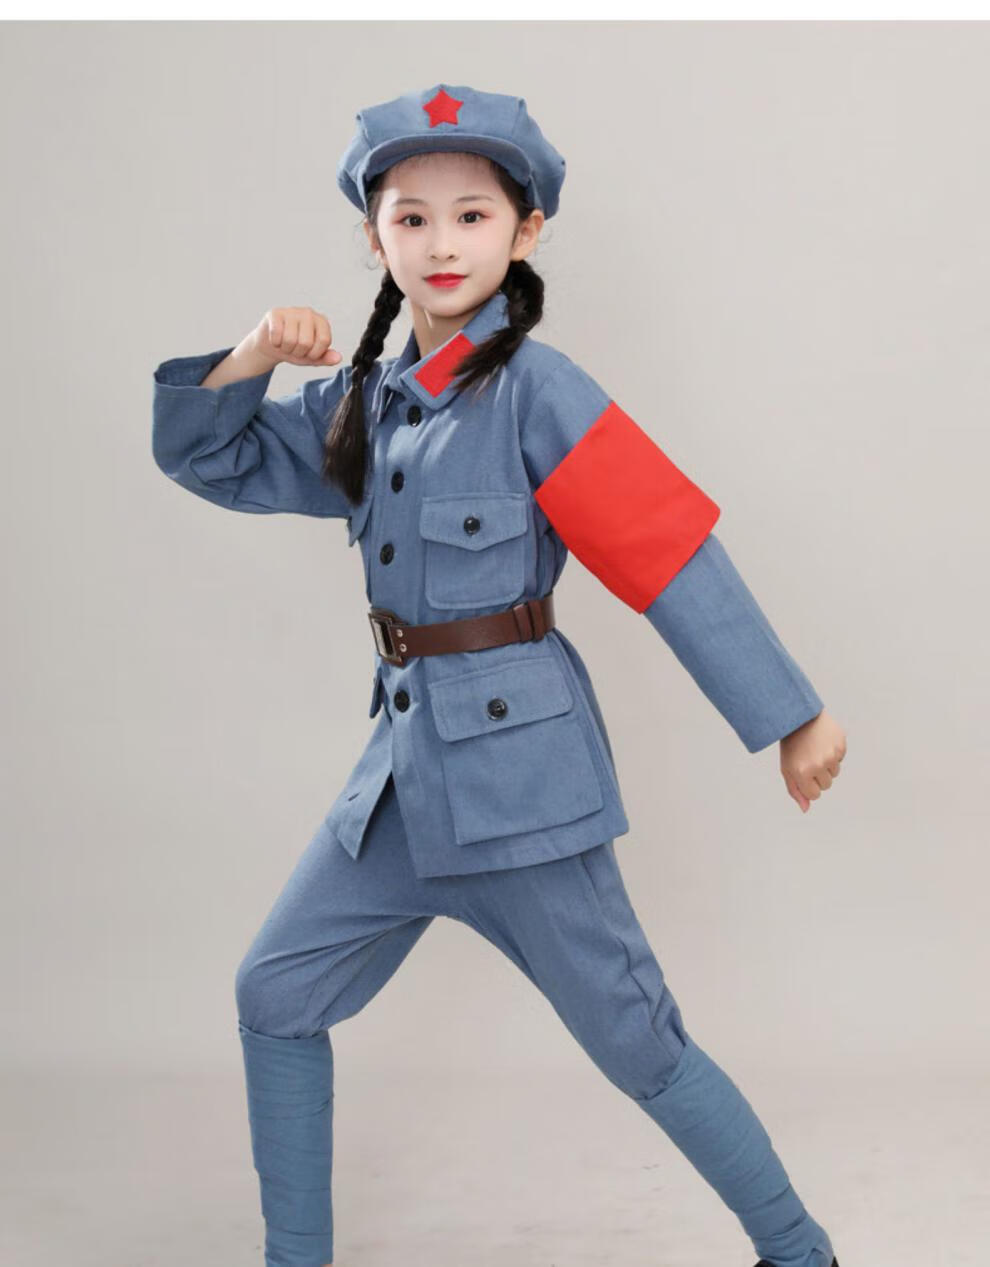 儿童红军服装演出妆容图片